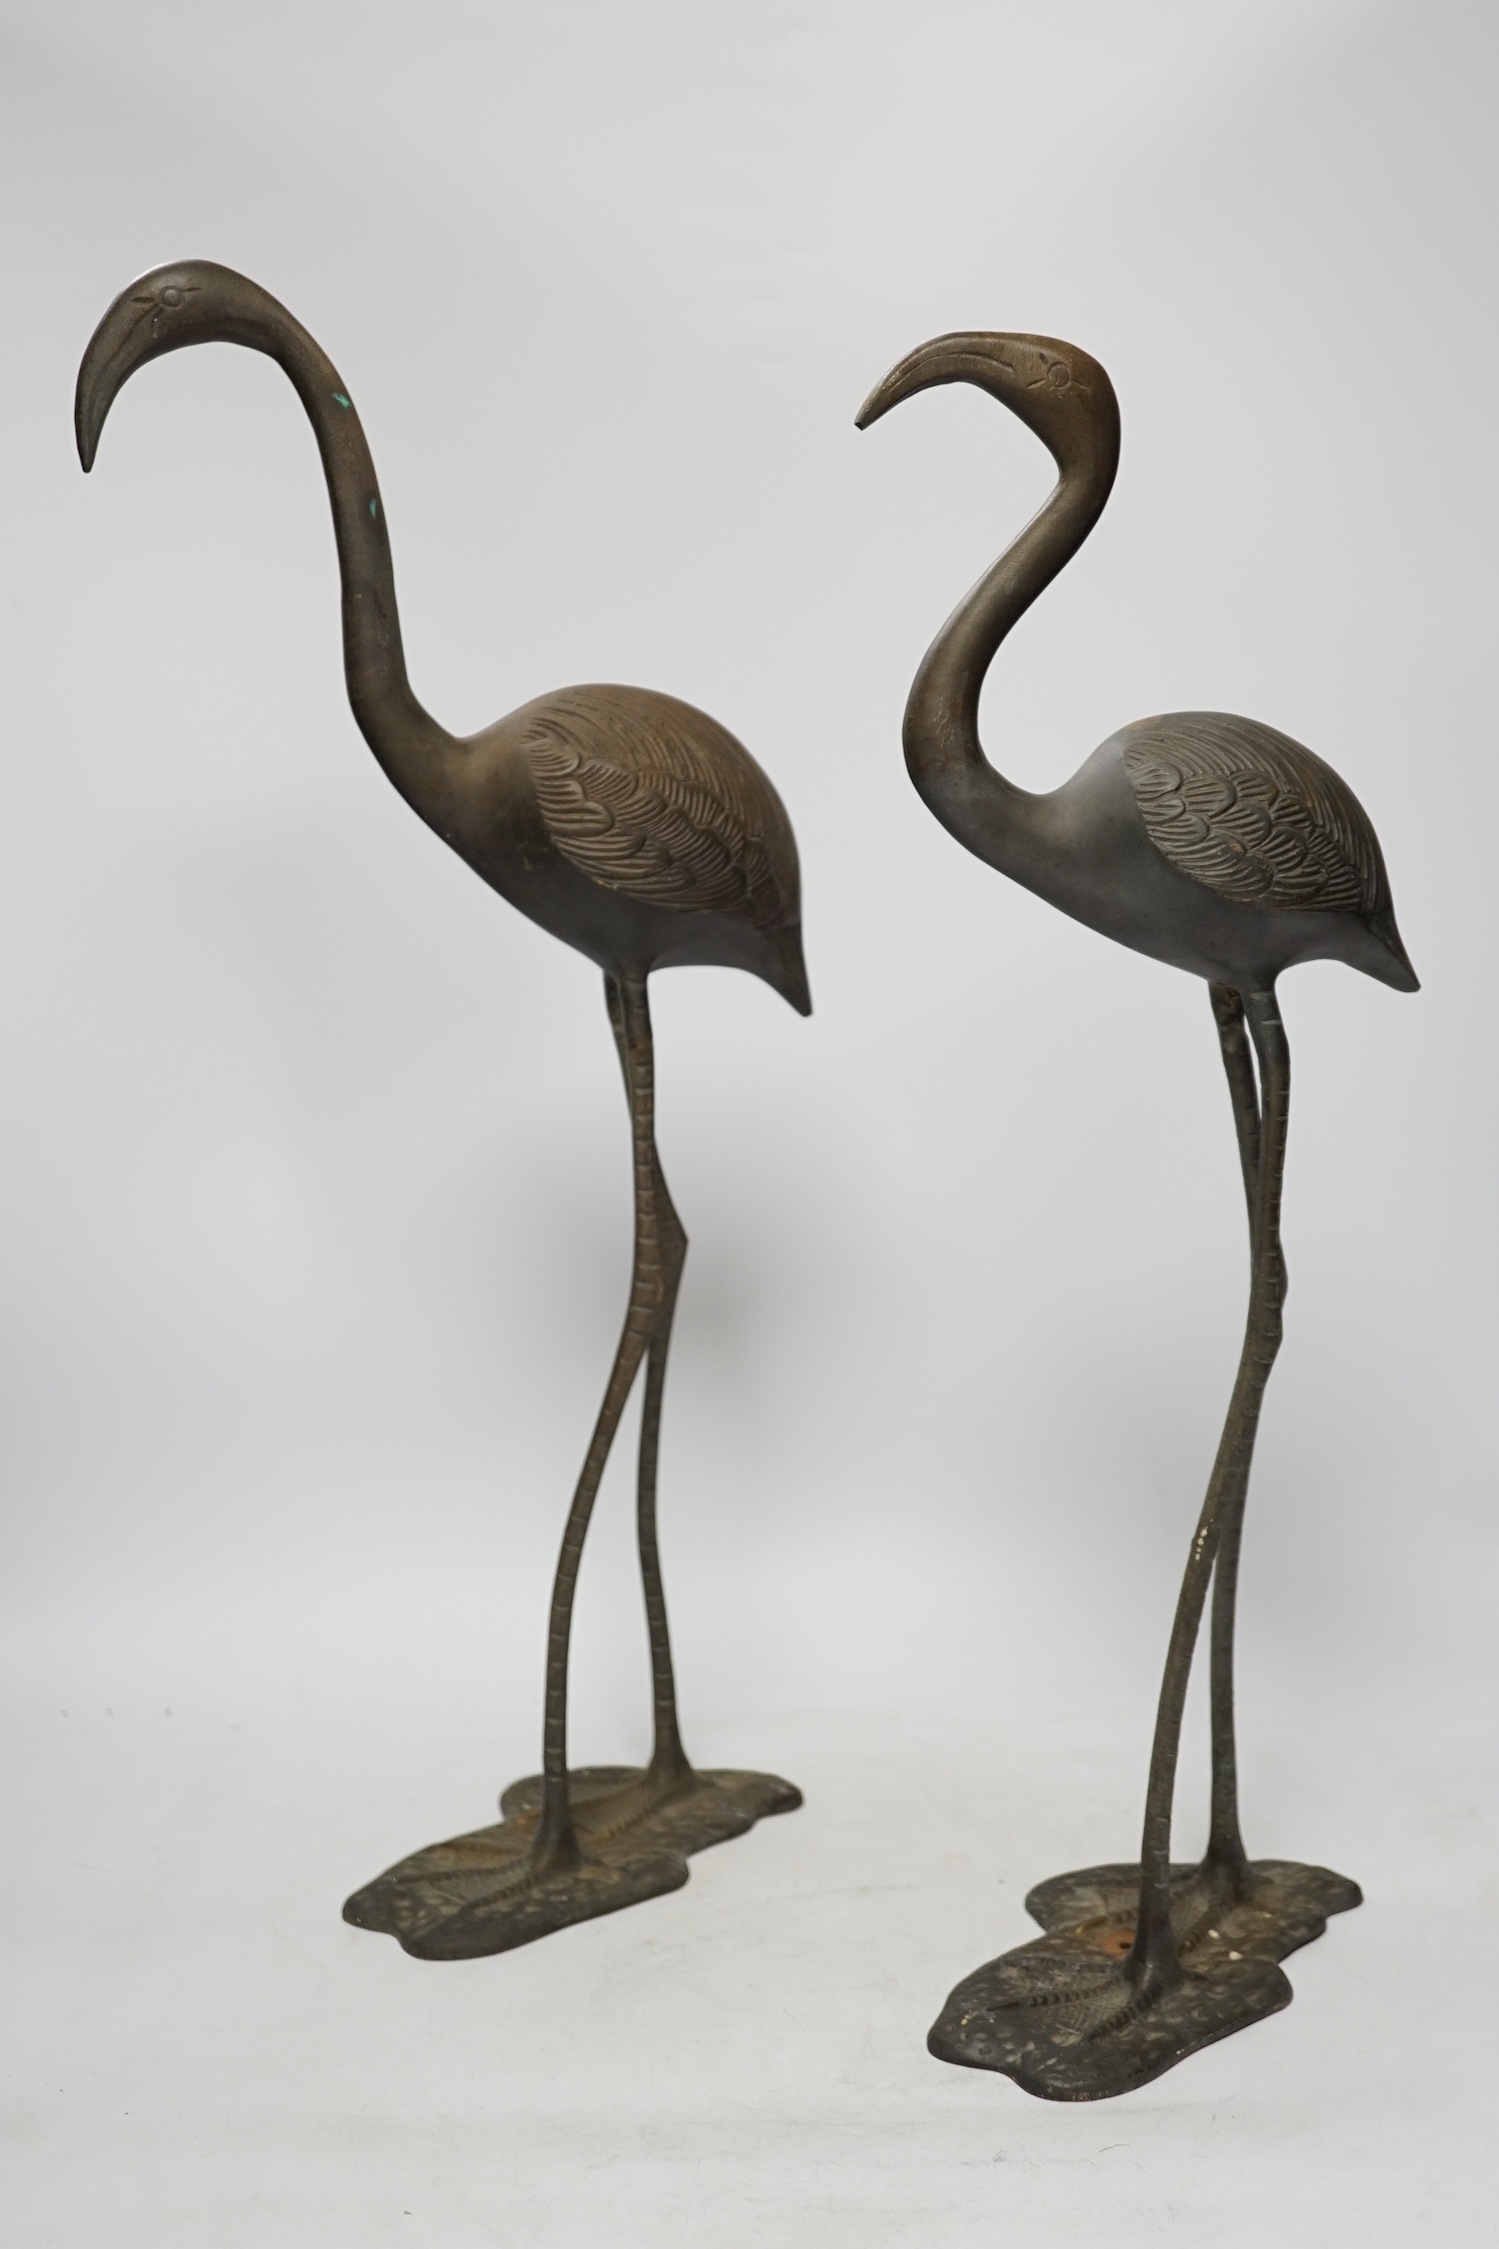 A pair of brass cranes, a pair of brass chamber sticks another chamberstick and a bowl, tallest 53cm high